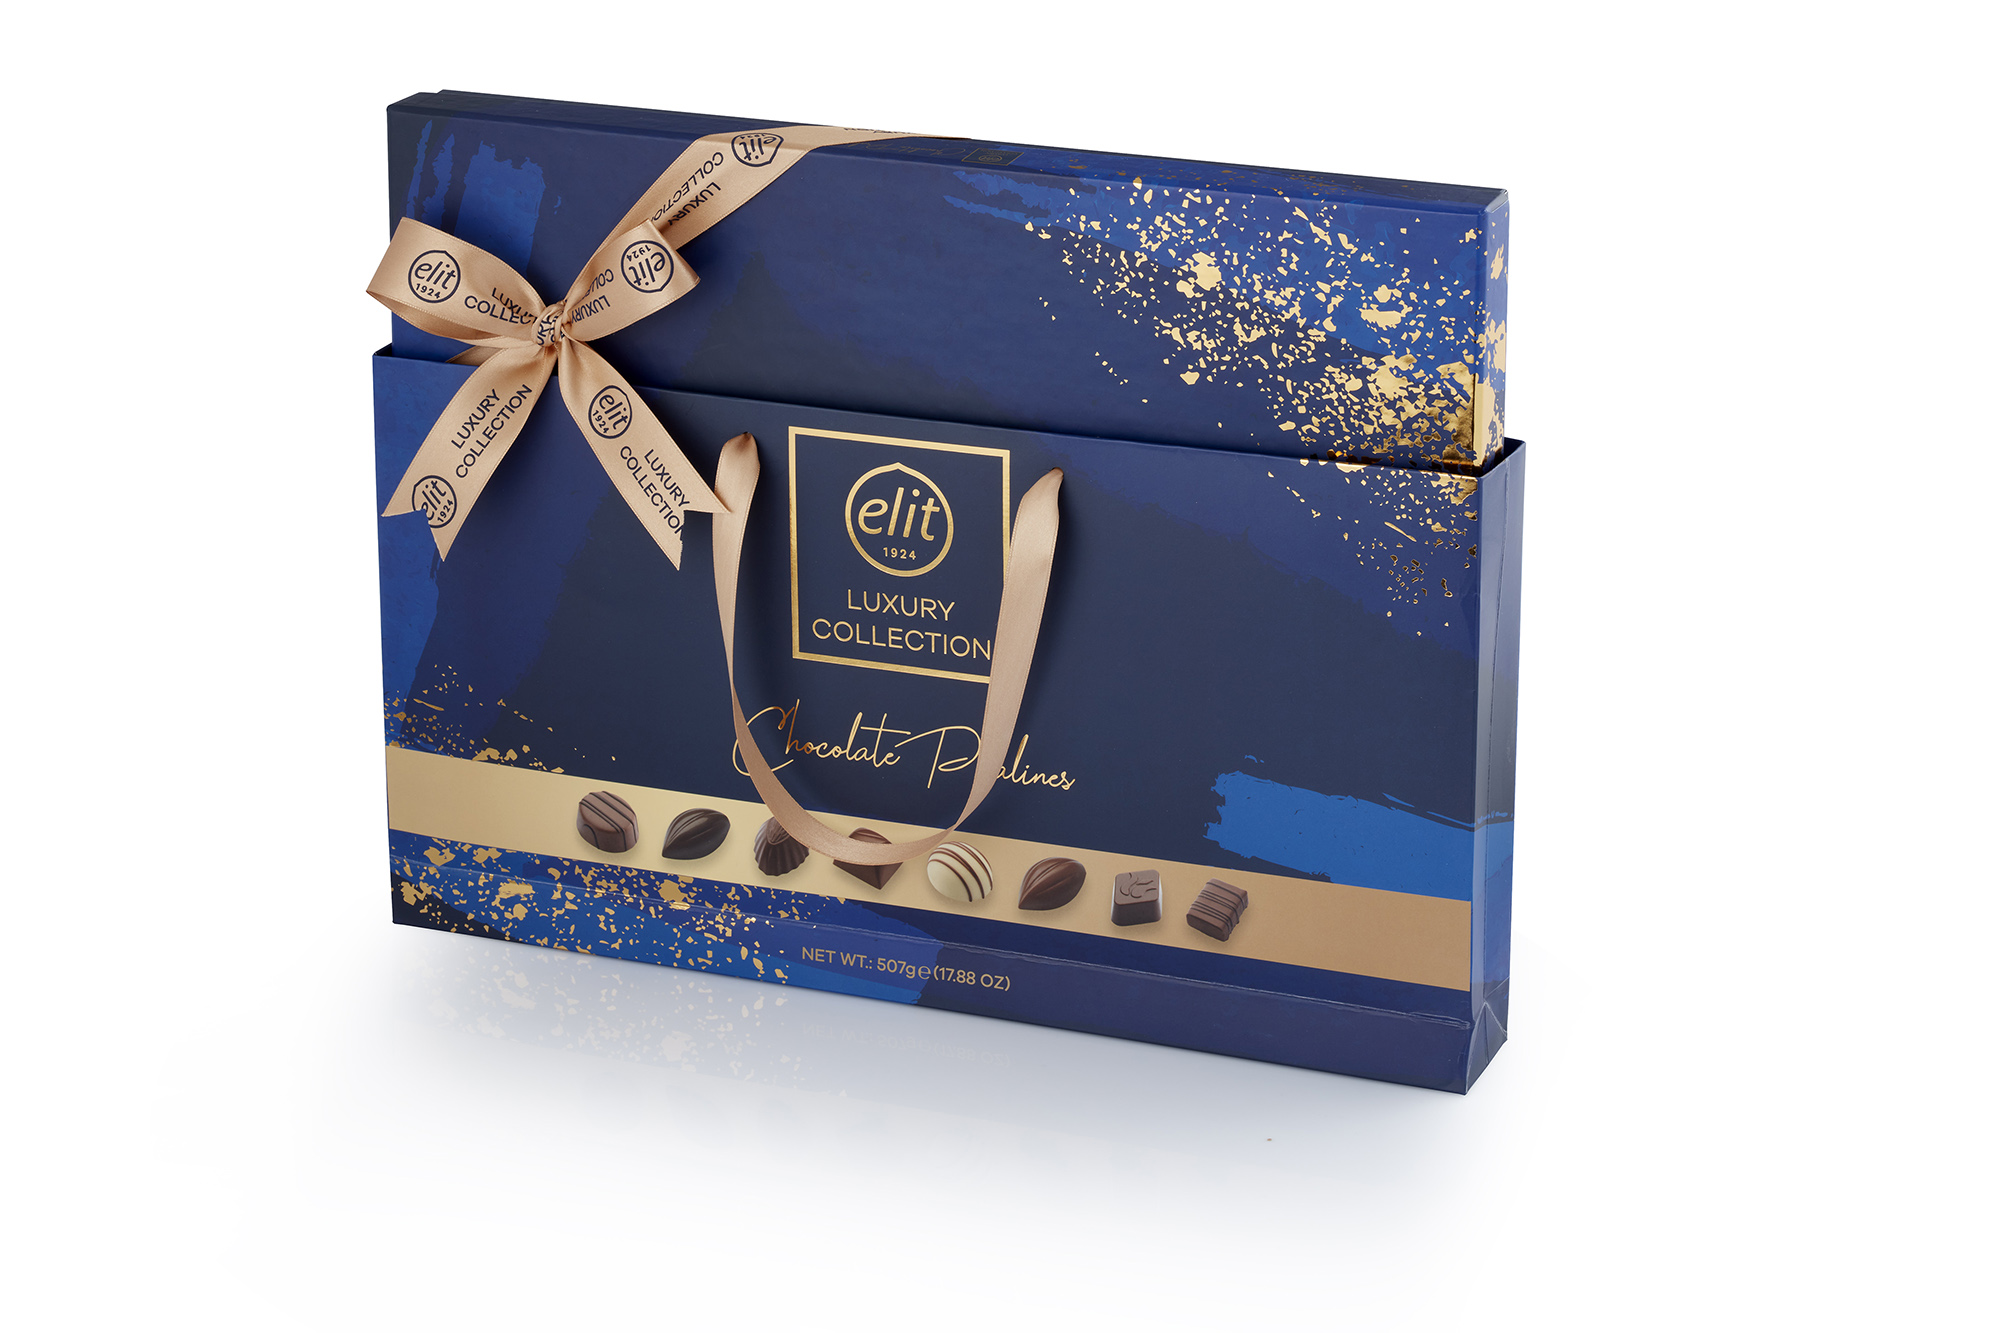 91007299 Шоколадные конфеты  " Luxury Collection" ассорти, синяя, (с сумочкой),  507гр. "Элит 1924"